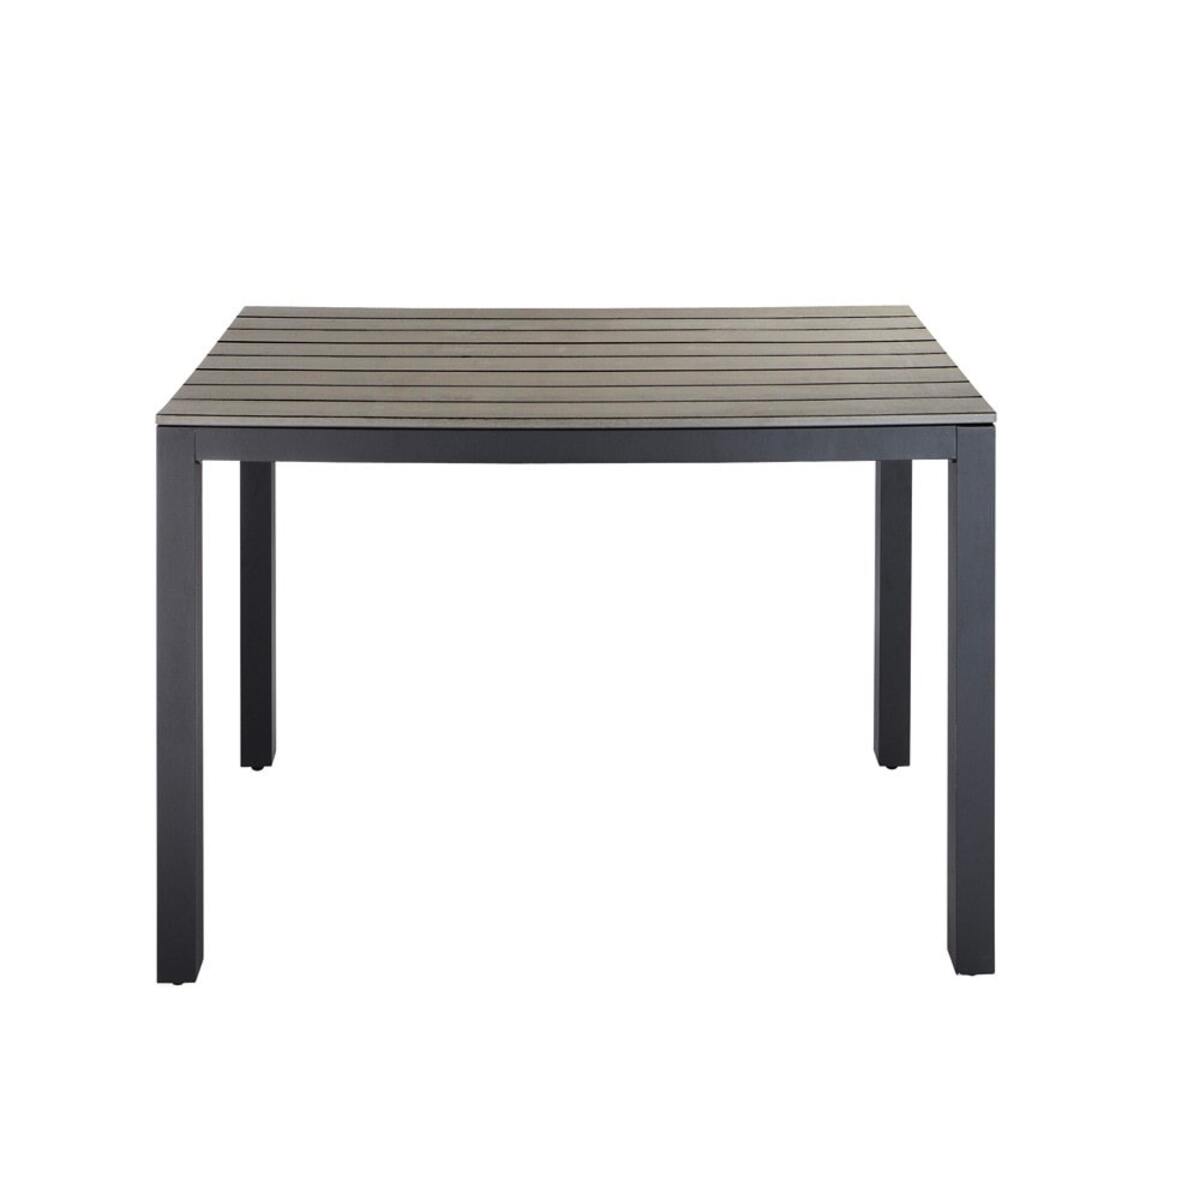 Table de jardin en aluminium gris anthracite L104 Escale